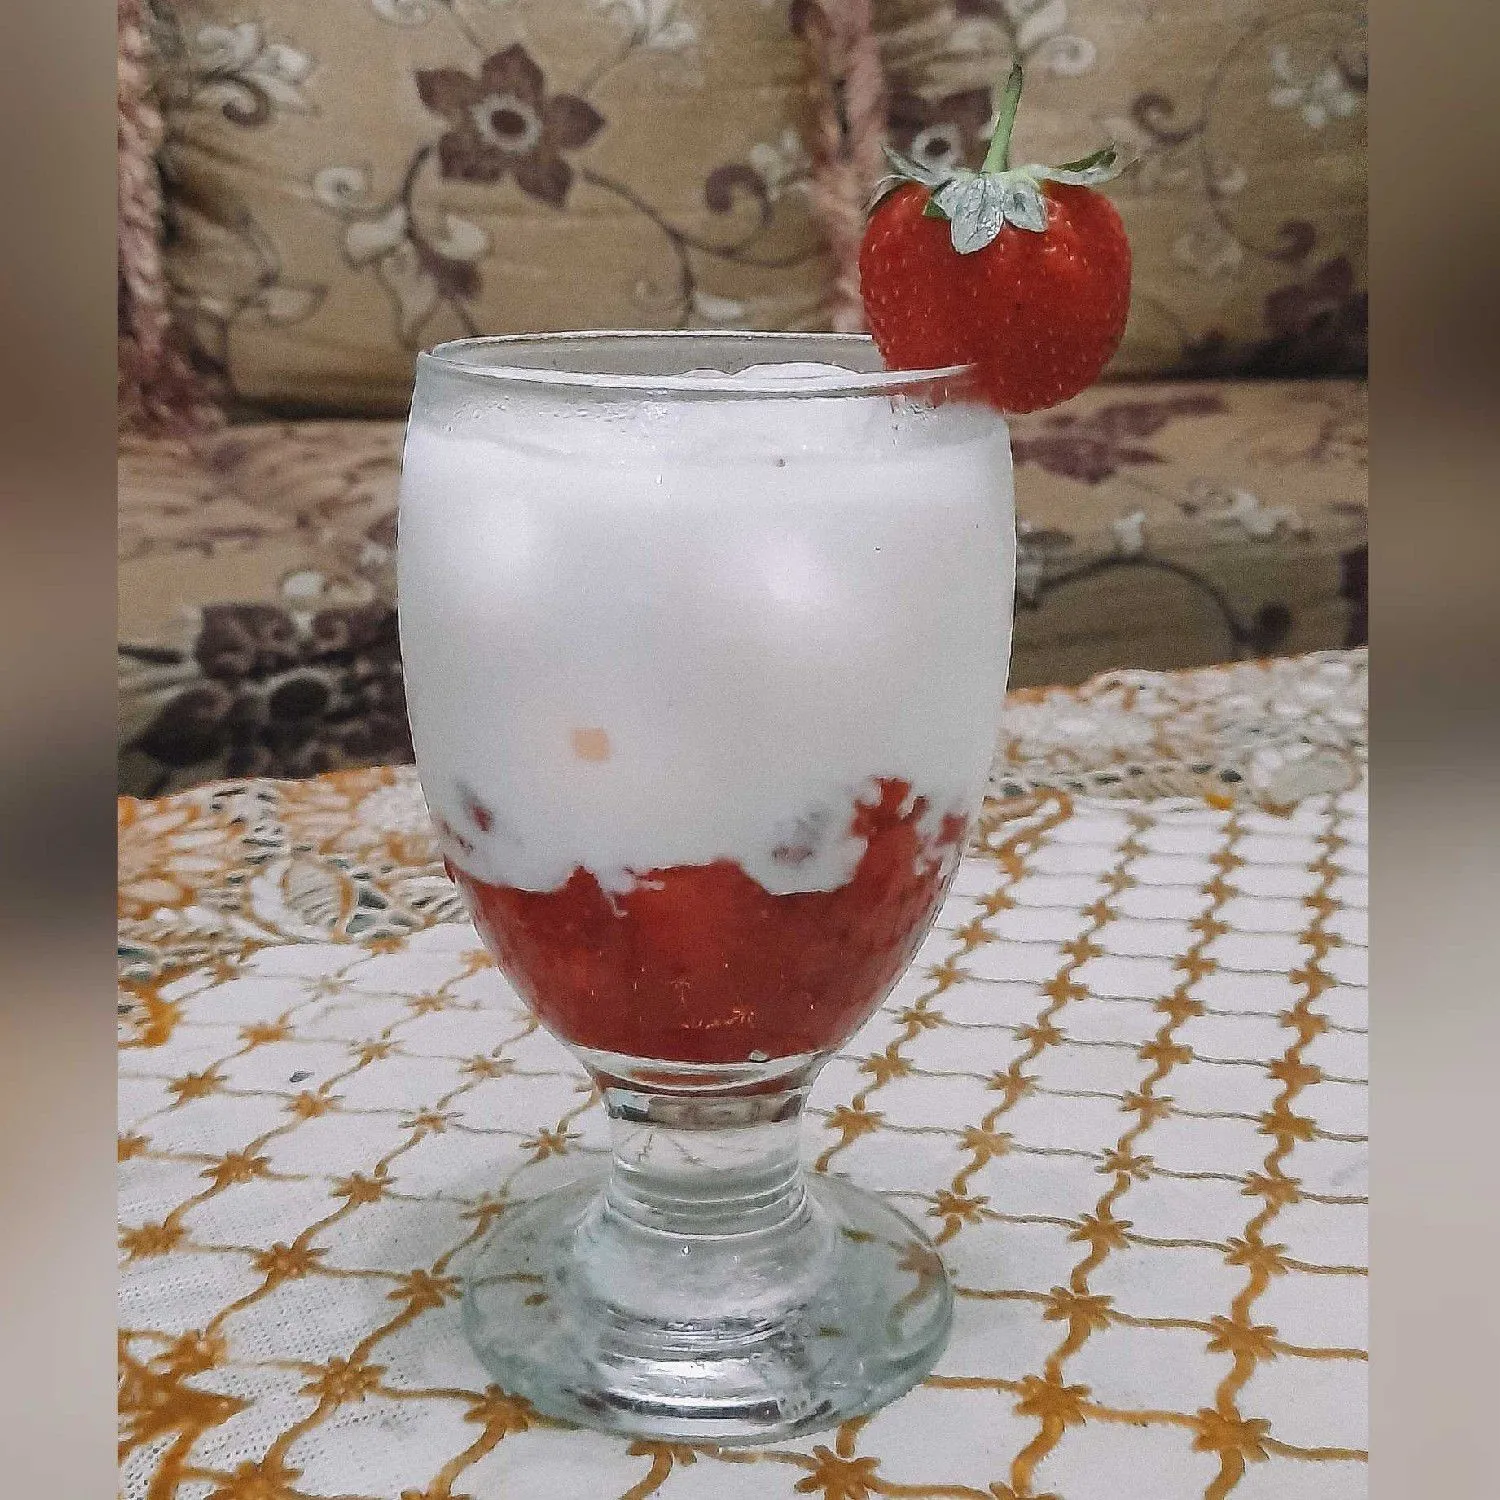 Strawberry Latte #JagoMasakMinggu11